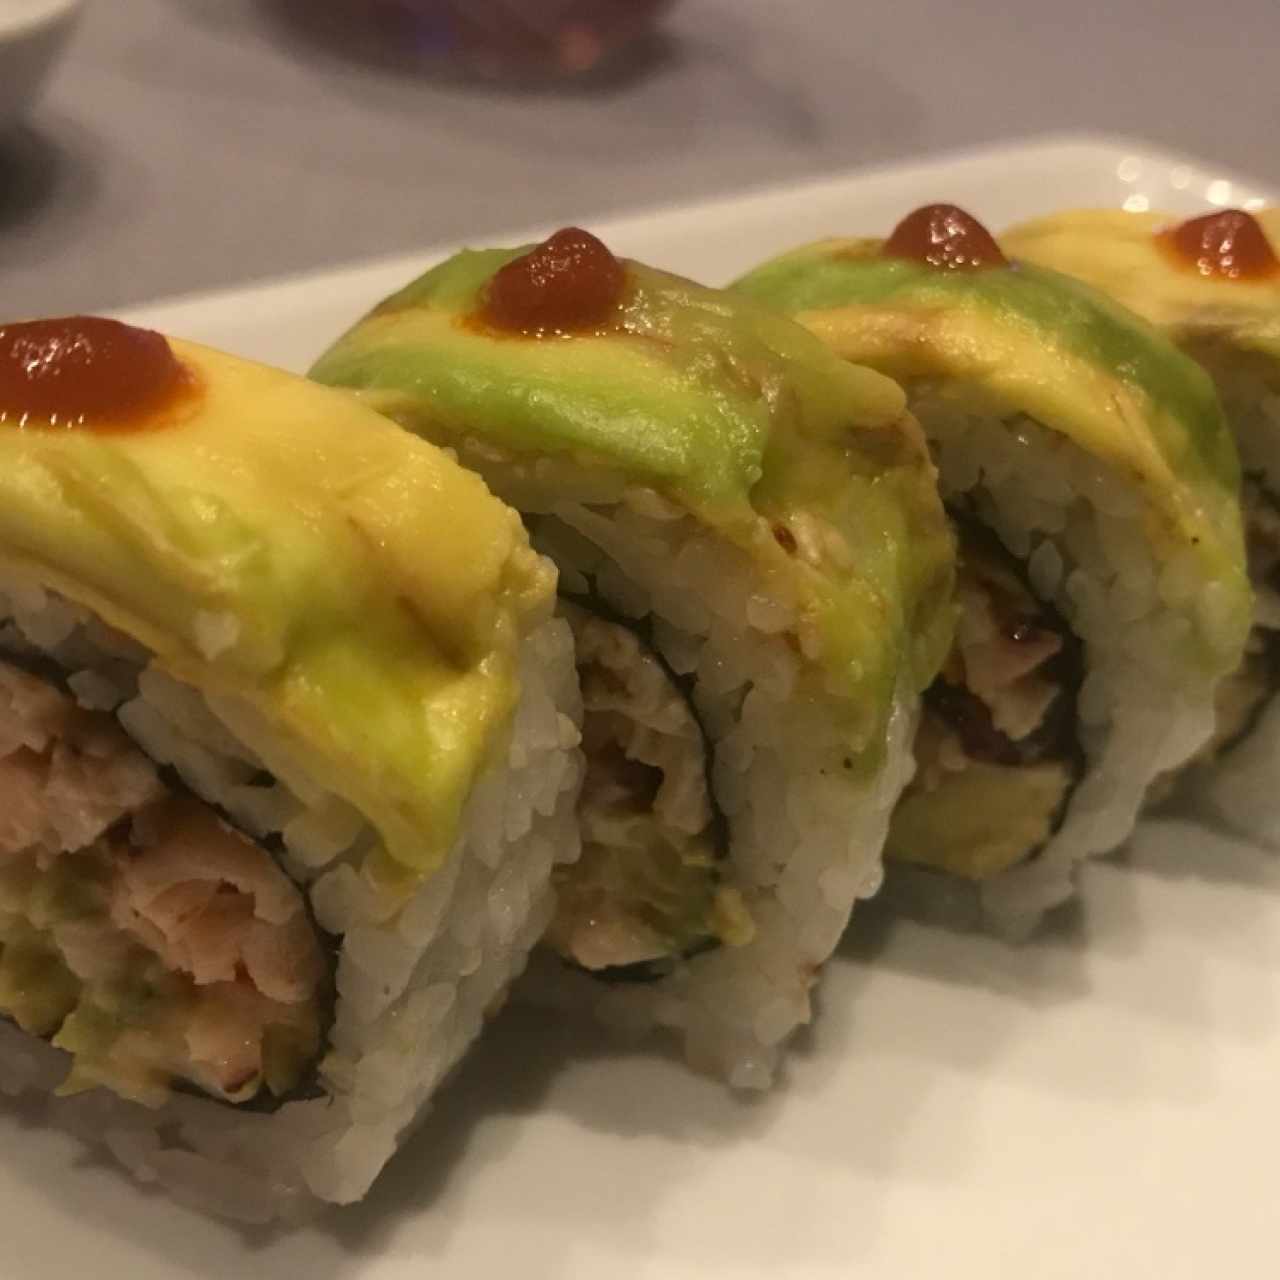 Sushi rolls/Makis - Spicy tako maki